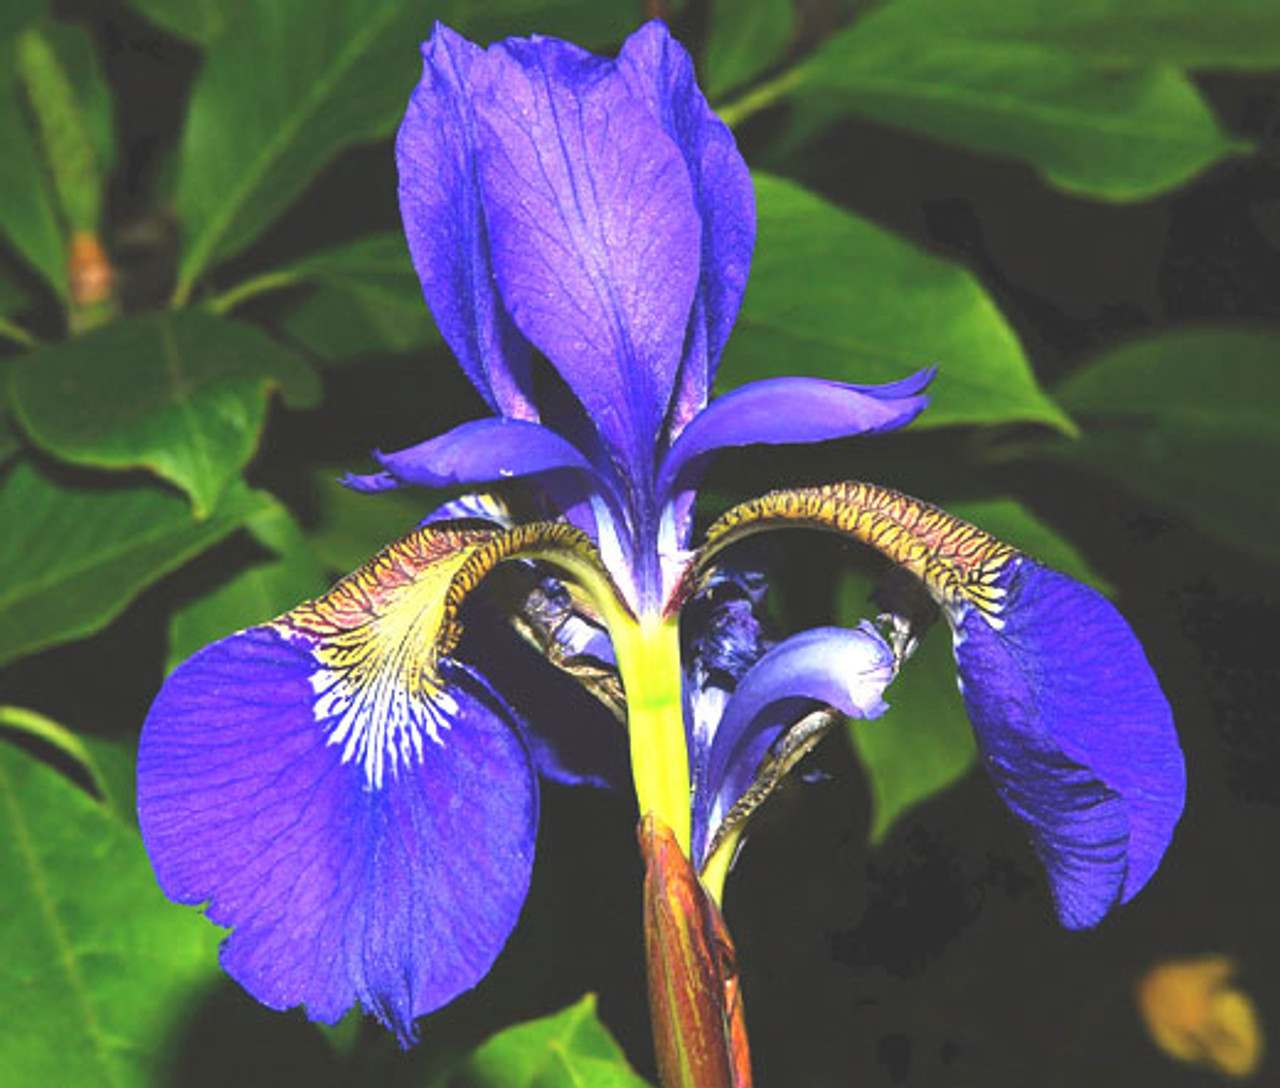 Are Irises Annual, Biennial, or Perennial plants?